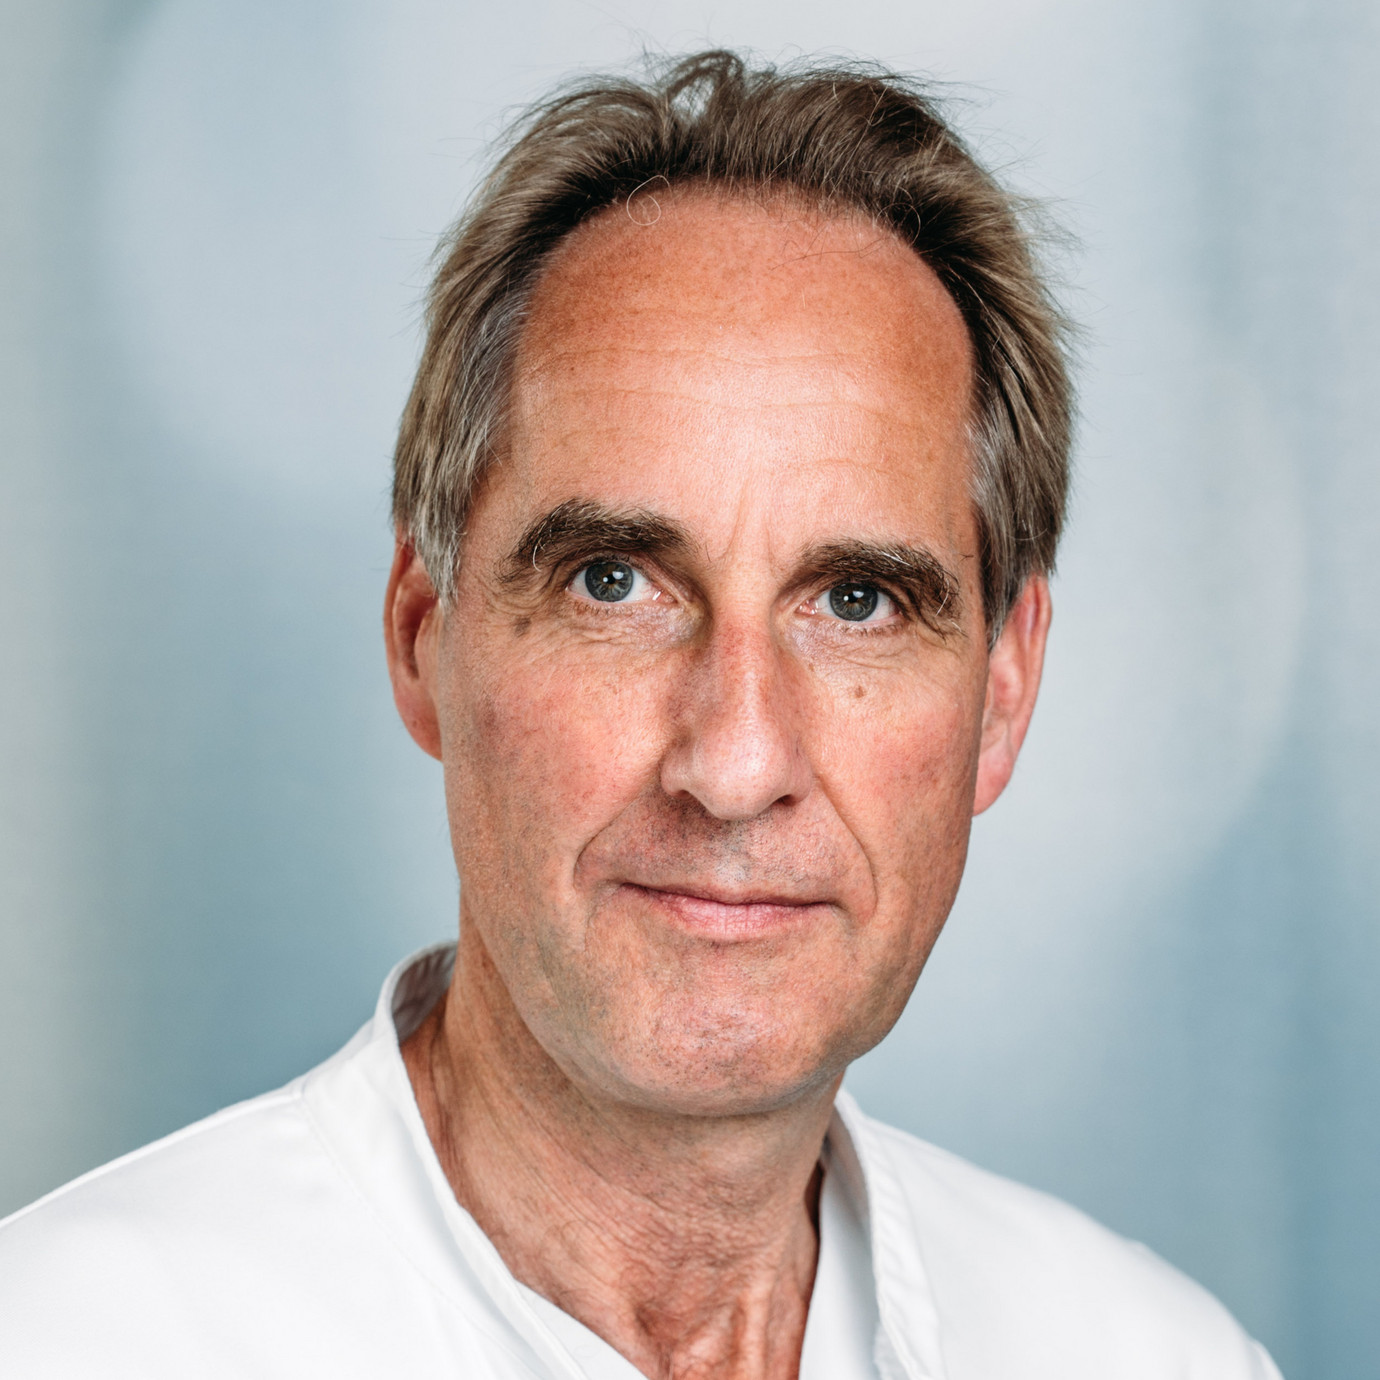 Porträt Prof. Dr. med. Thorsten Steiner, Chefarzt Neurologie, Klinikum Frankfurt Höchst